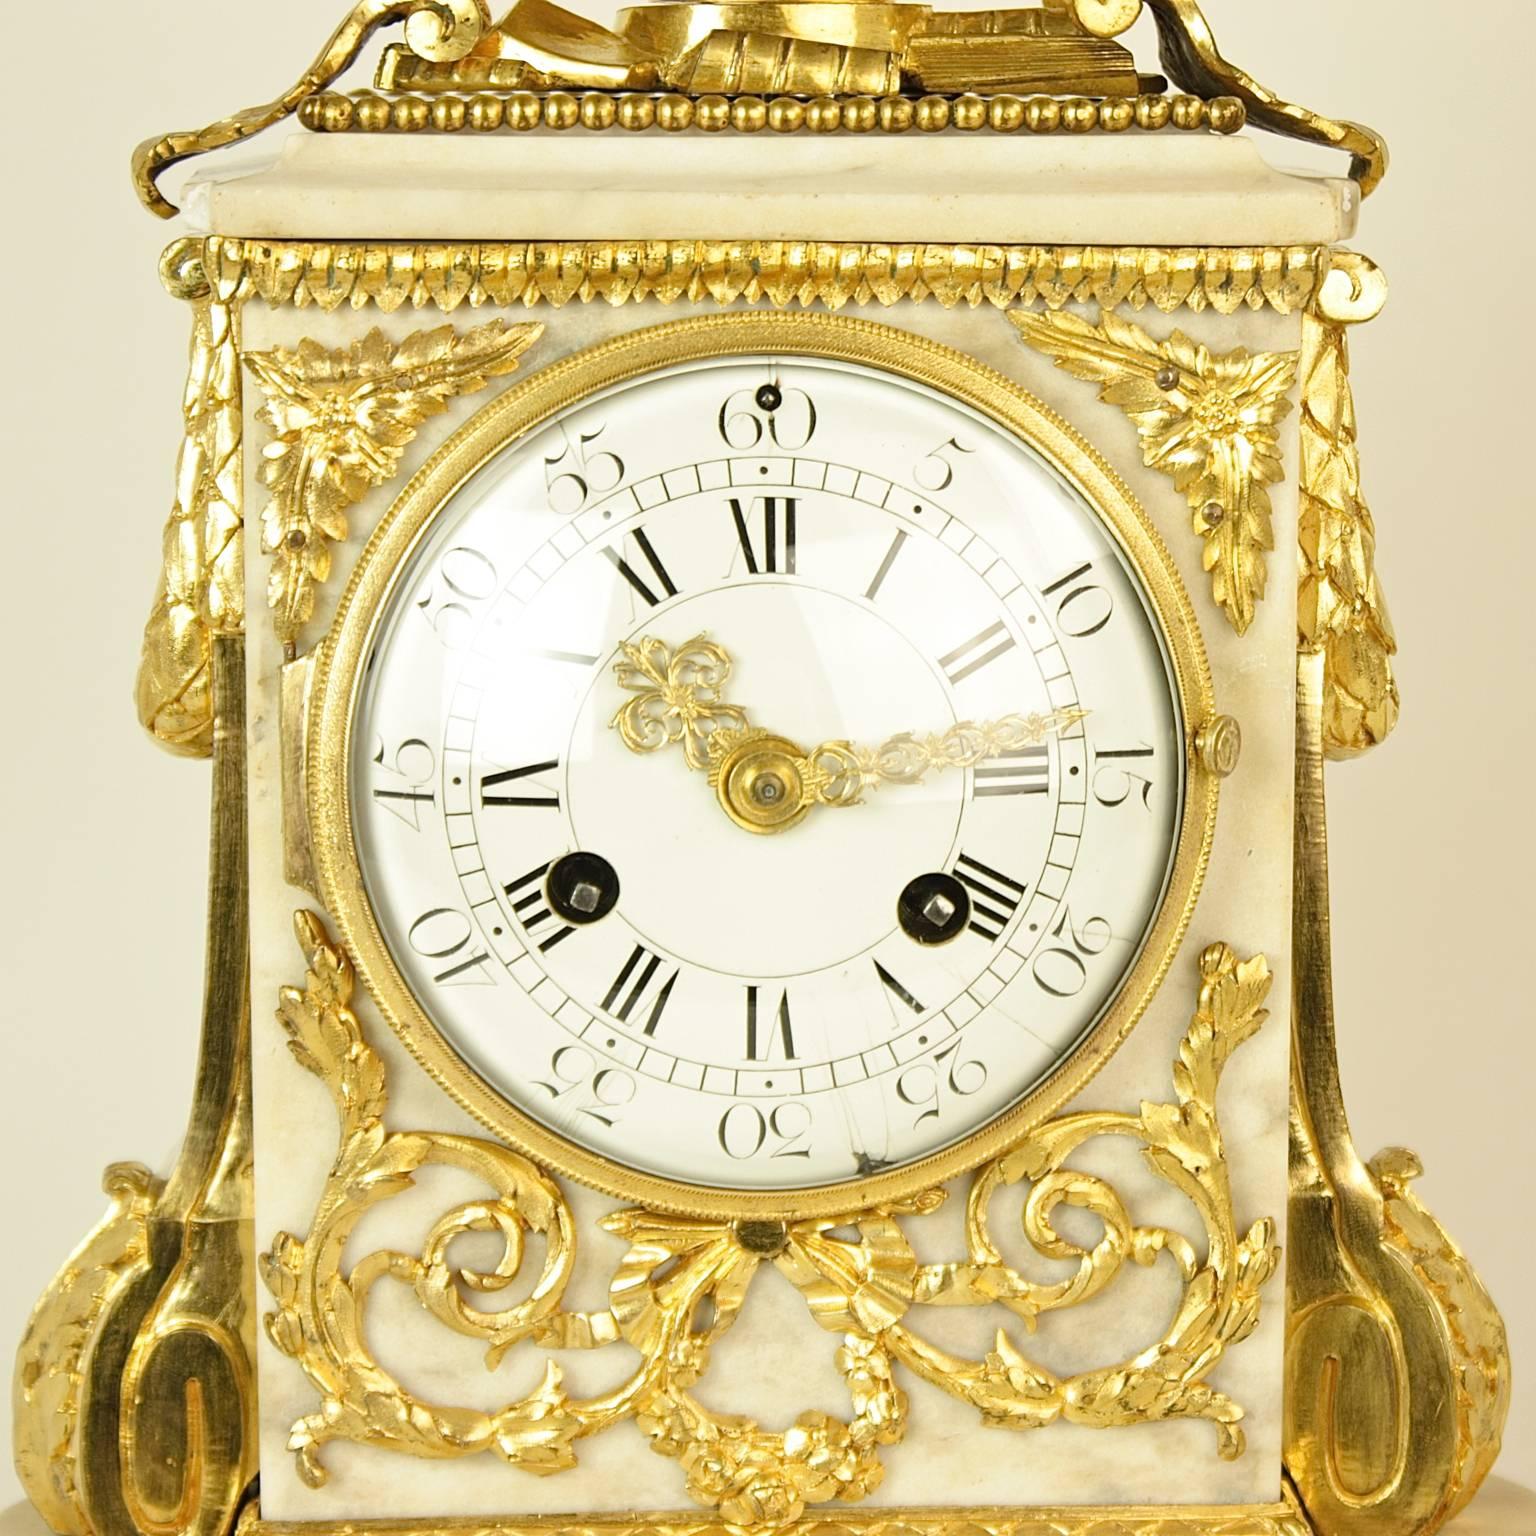 Pendule de cheminée en bronze doré et marbre blanc de style Louis XVI du XVIIIe siècle, vers 1780

Pendule en bronze doré et marbre blanc du XVIIIe siècle, le cadran en émail blanc avec des chiffres romains et arabes, contenu dans un boîtier en